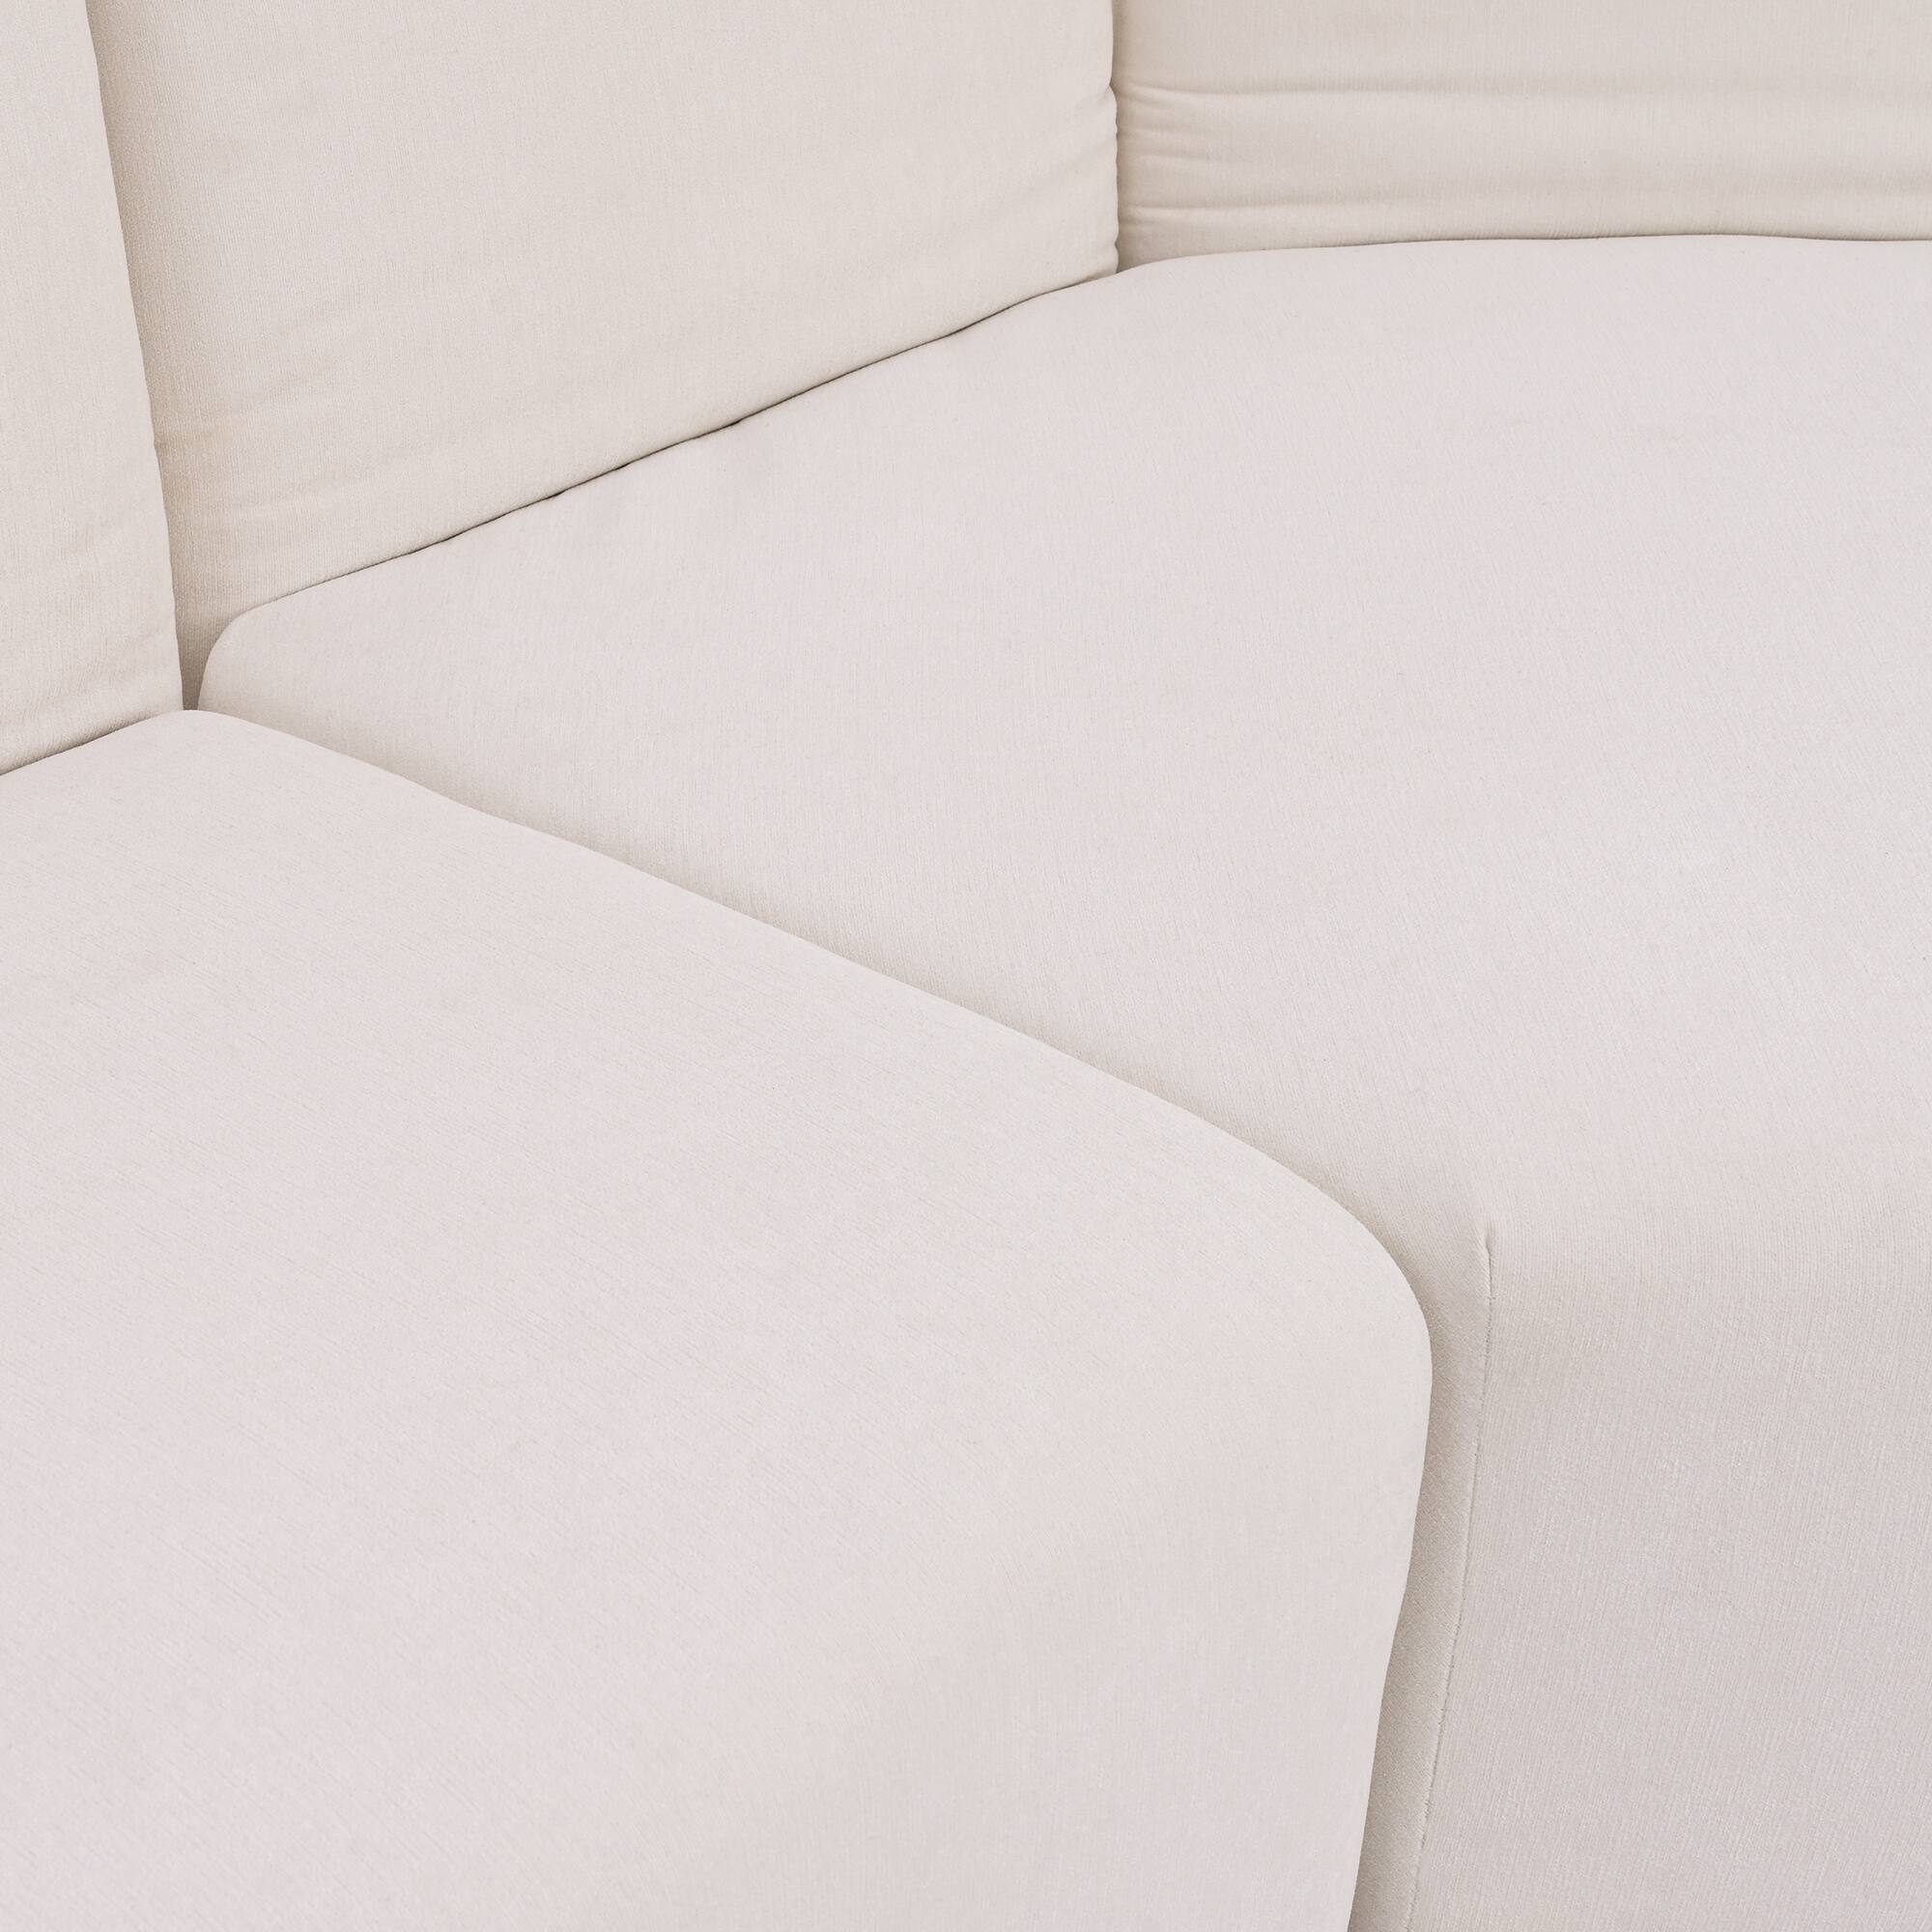 Petal-Shaped Sofa Sets Modern Beige Sectional Sofa Adjustable Back